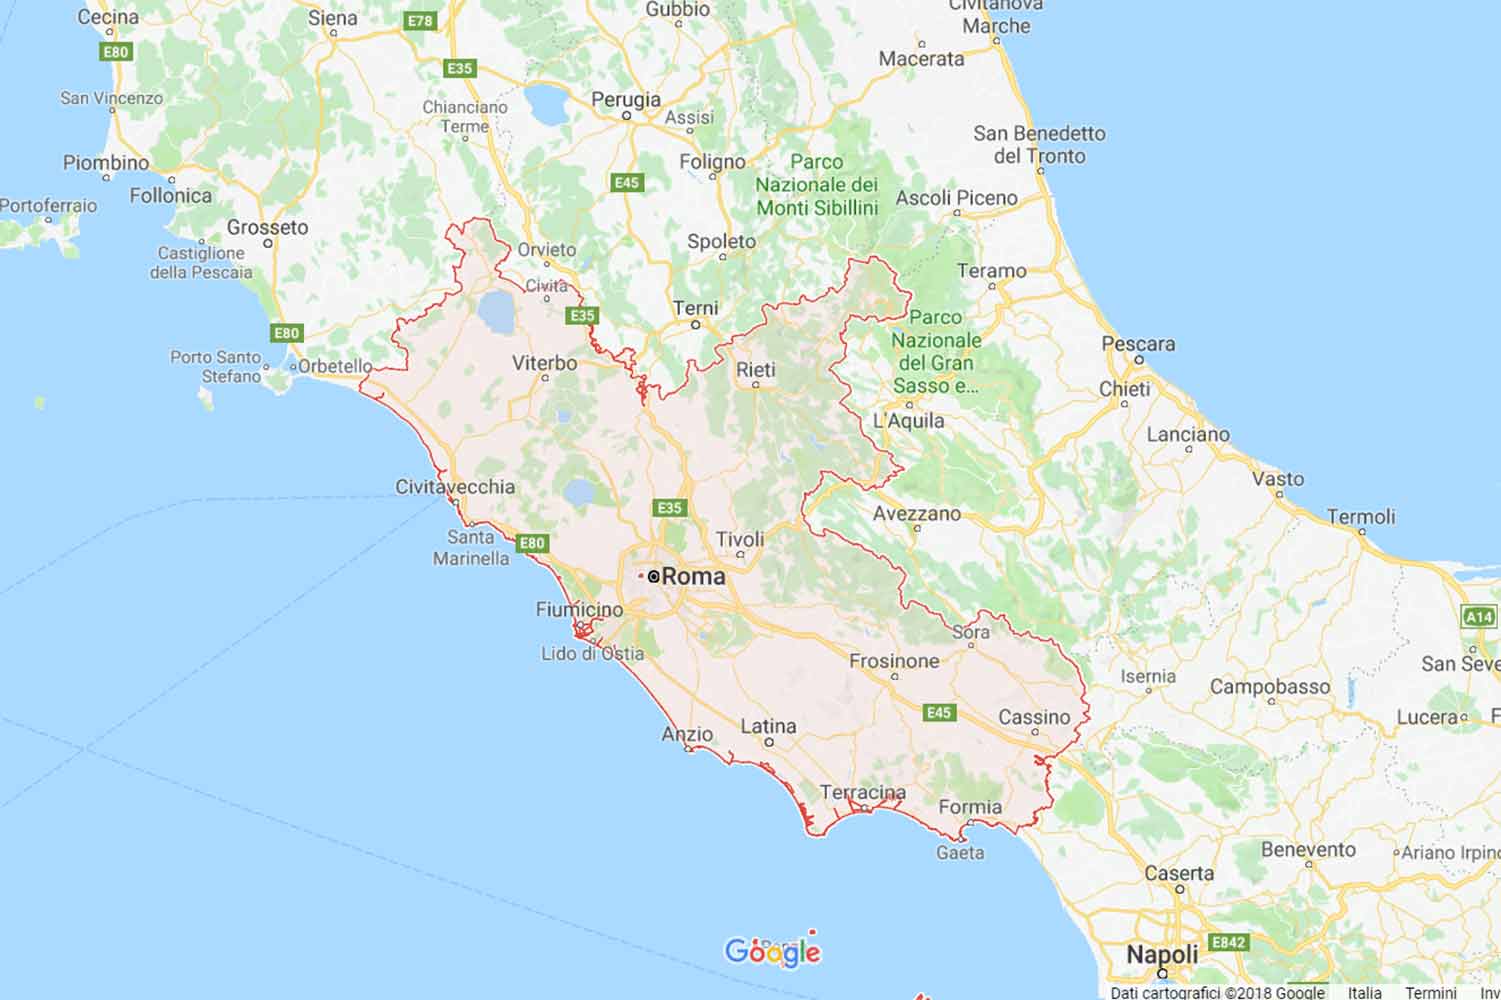 Lazio - Roma - Frascati Preventivi Veloci google maps